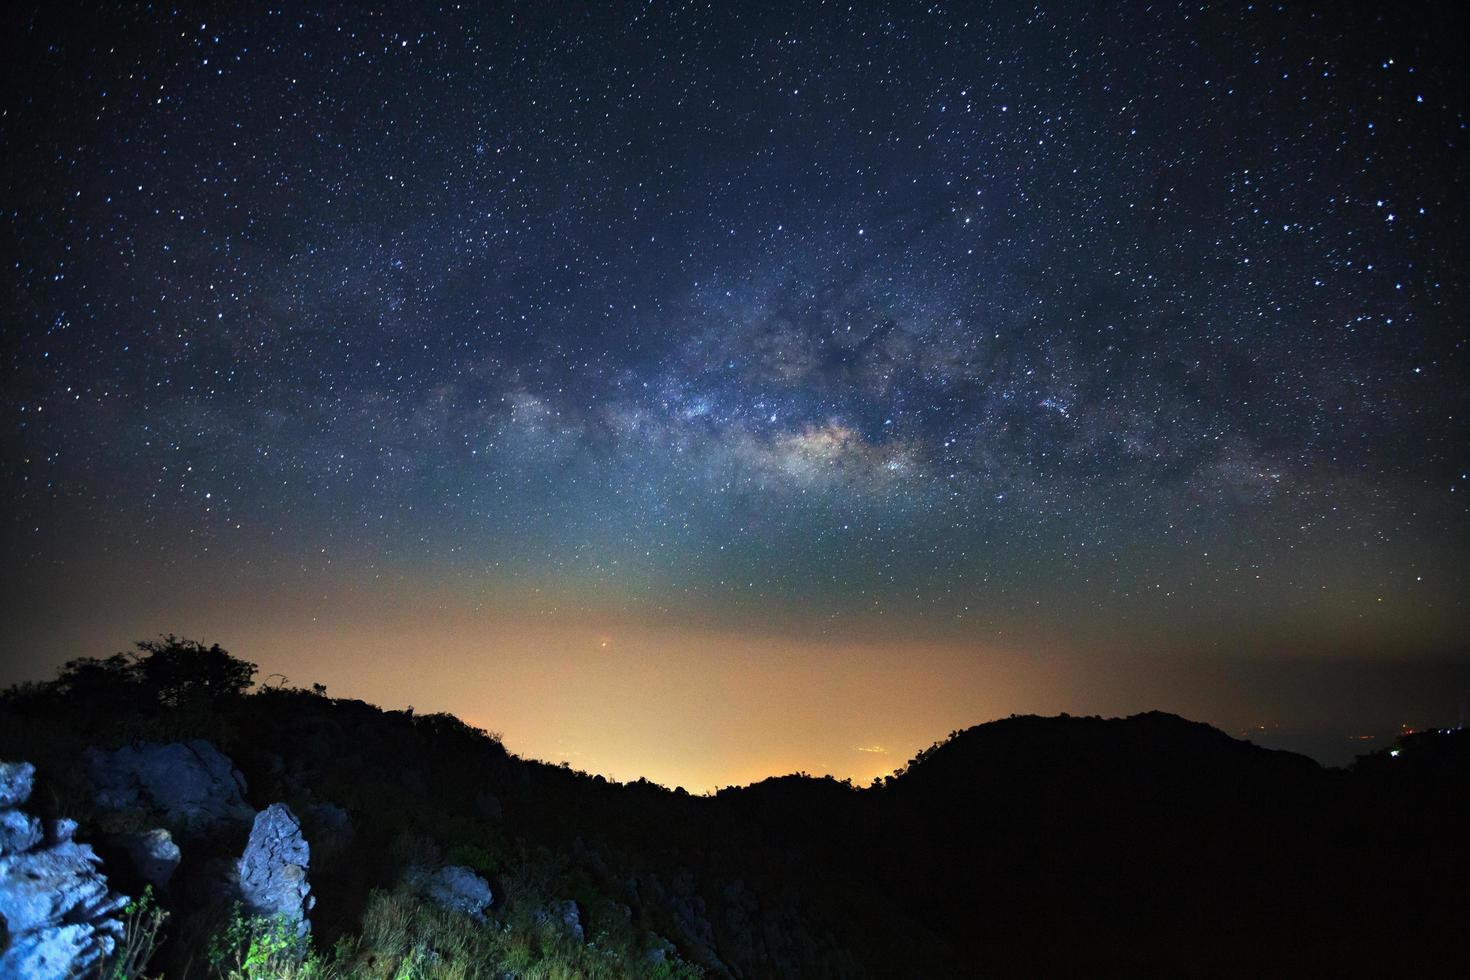 galáxia da via láctea em doi luang chiang dao.long fotografia de exposição.com grão foto